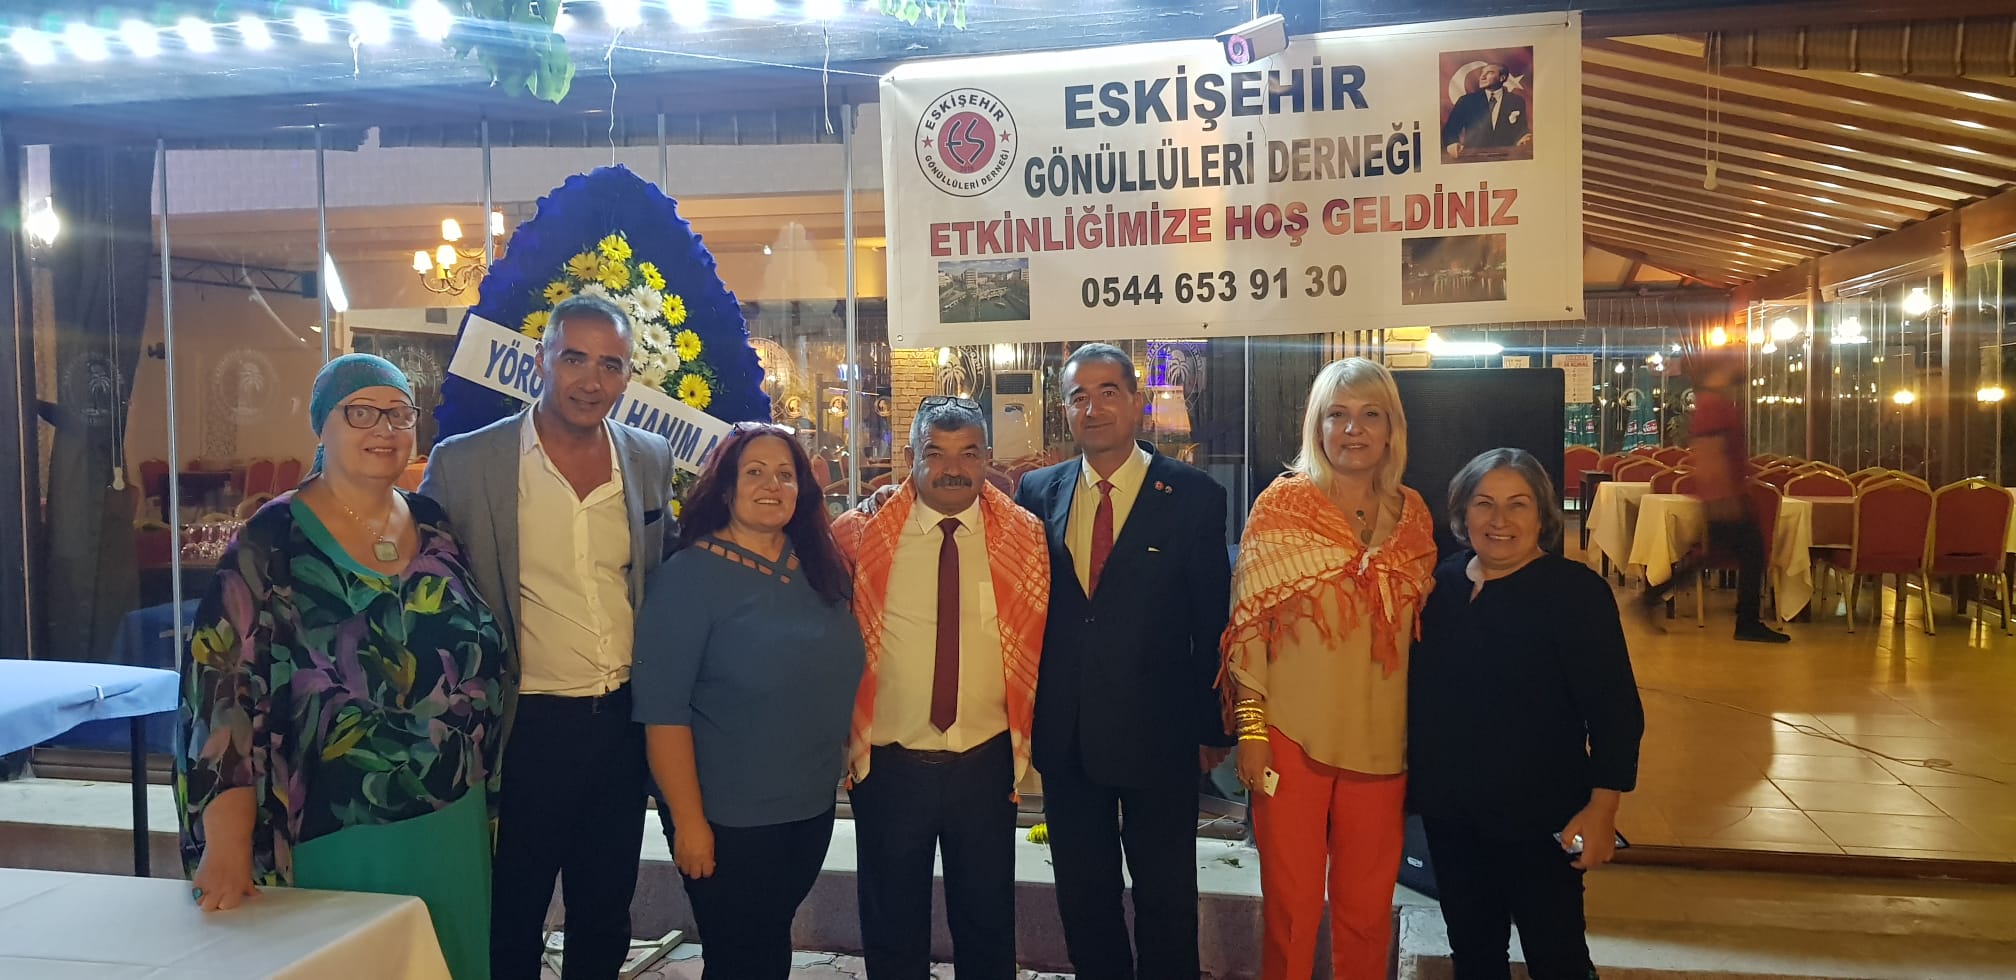 Antalya Eskişehir Gönüllüleri Derneği Kaynaşma Yemeği Düzenledi